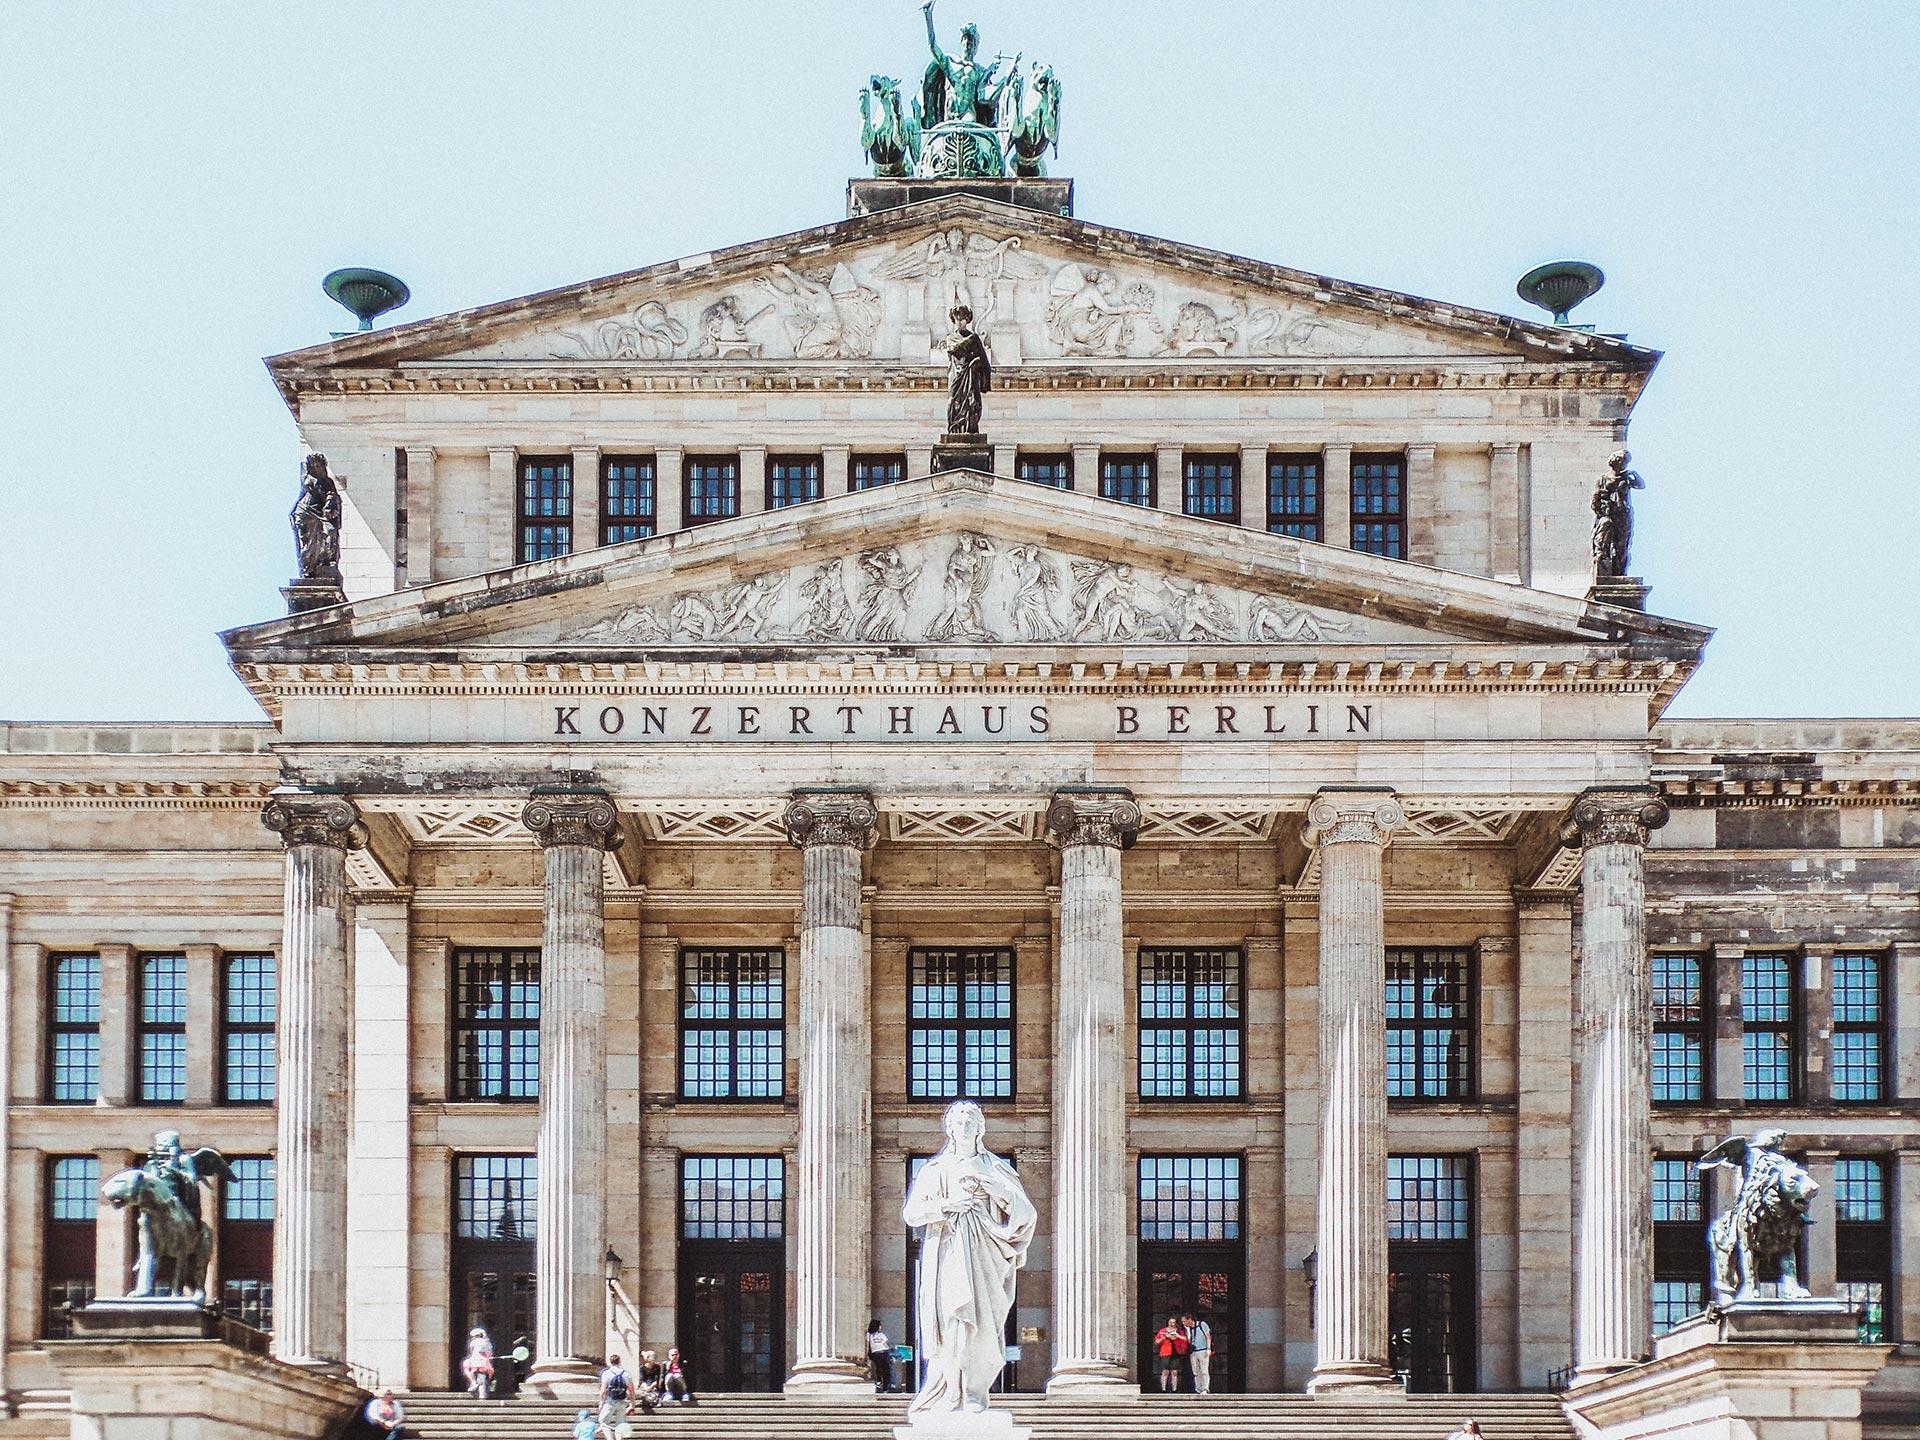 City of Berlin